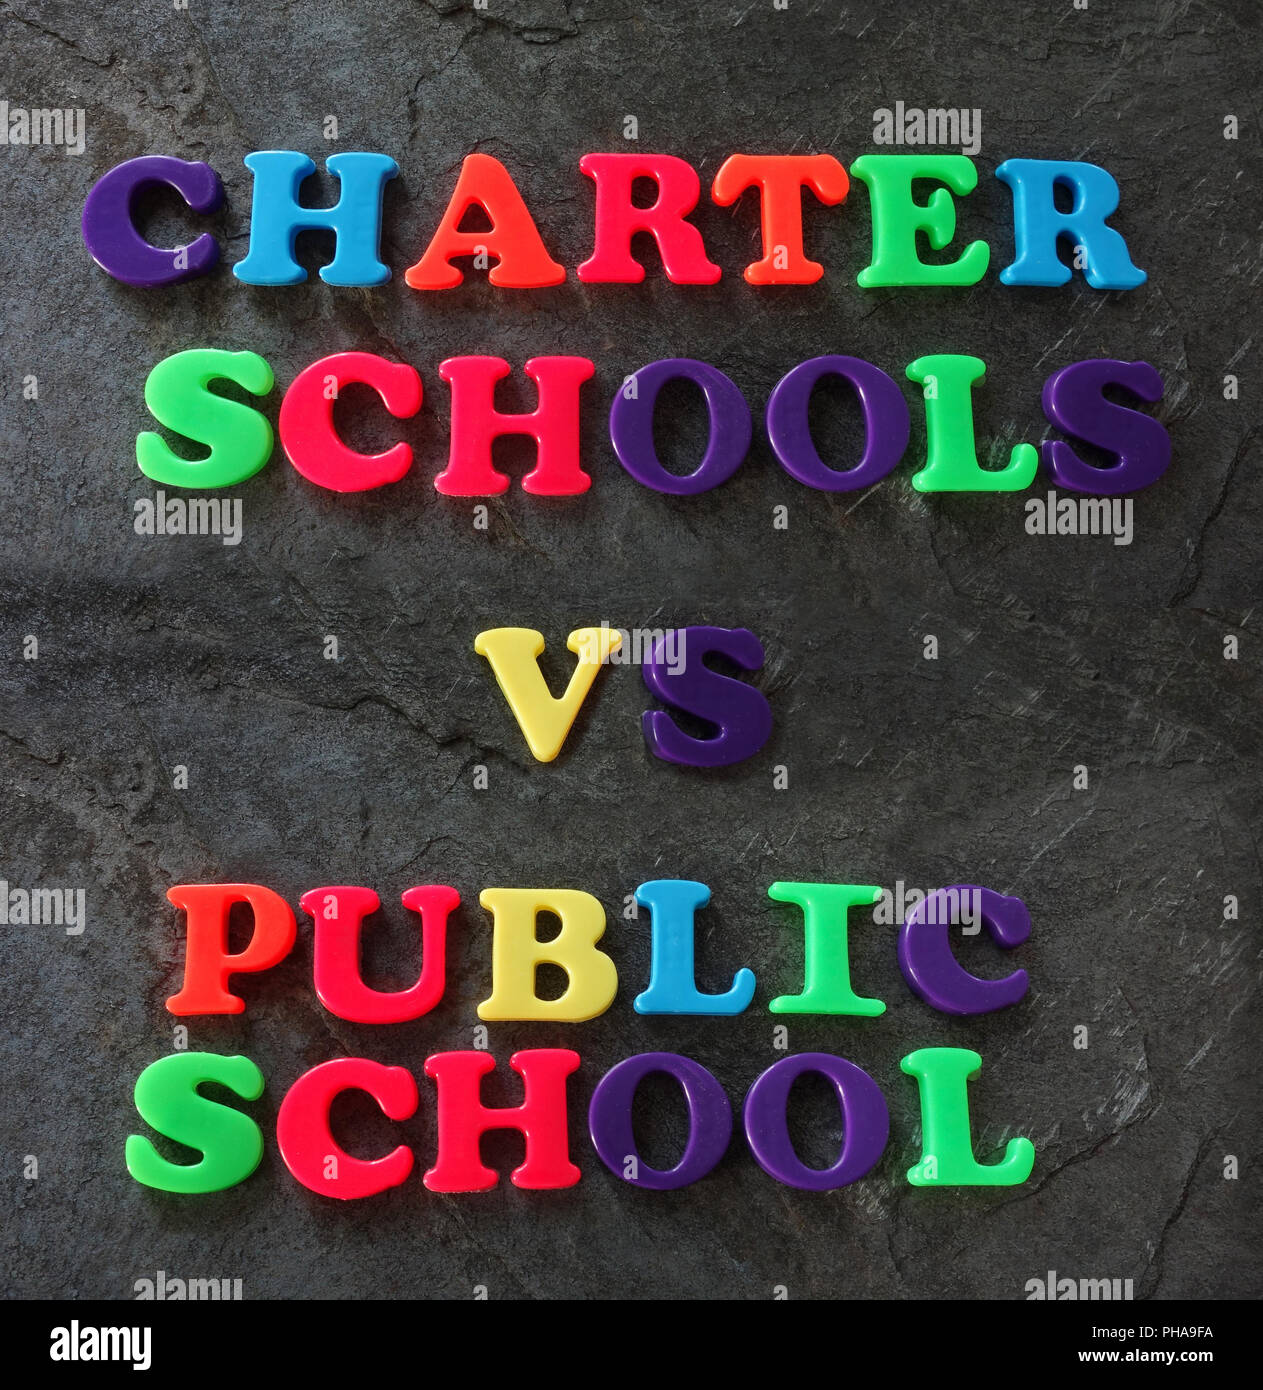 Charter vs Public school concept Stock Photo